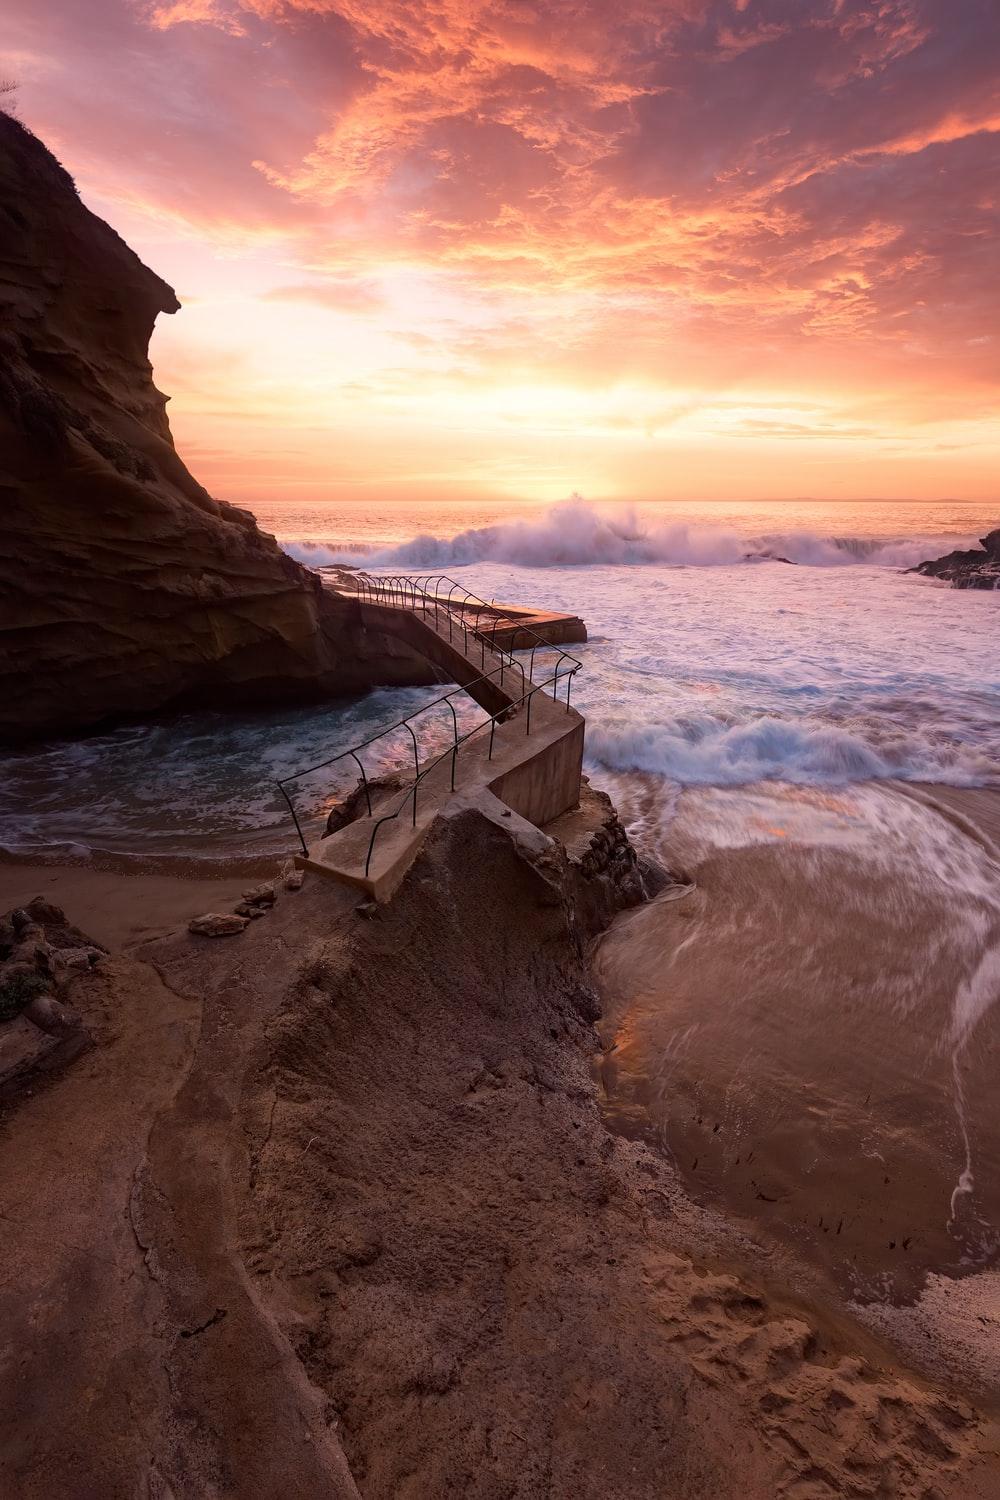 waves crashing on rocky coast during sunset photo